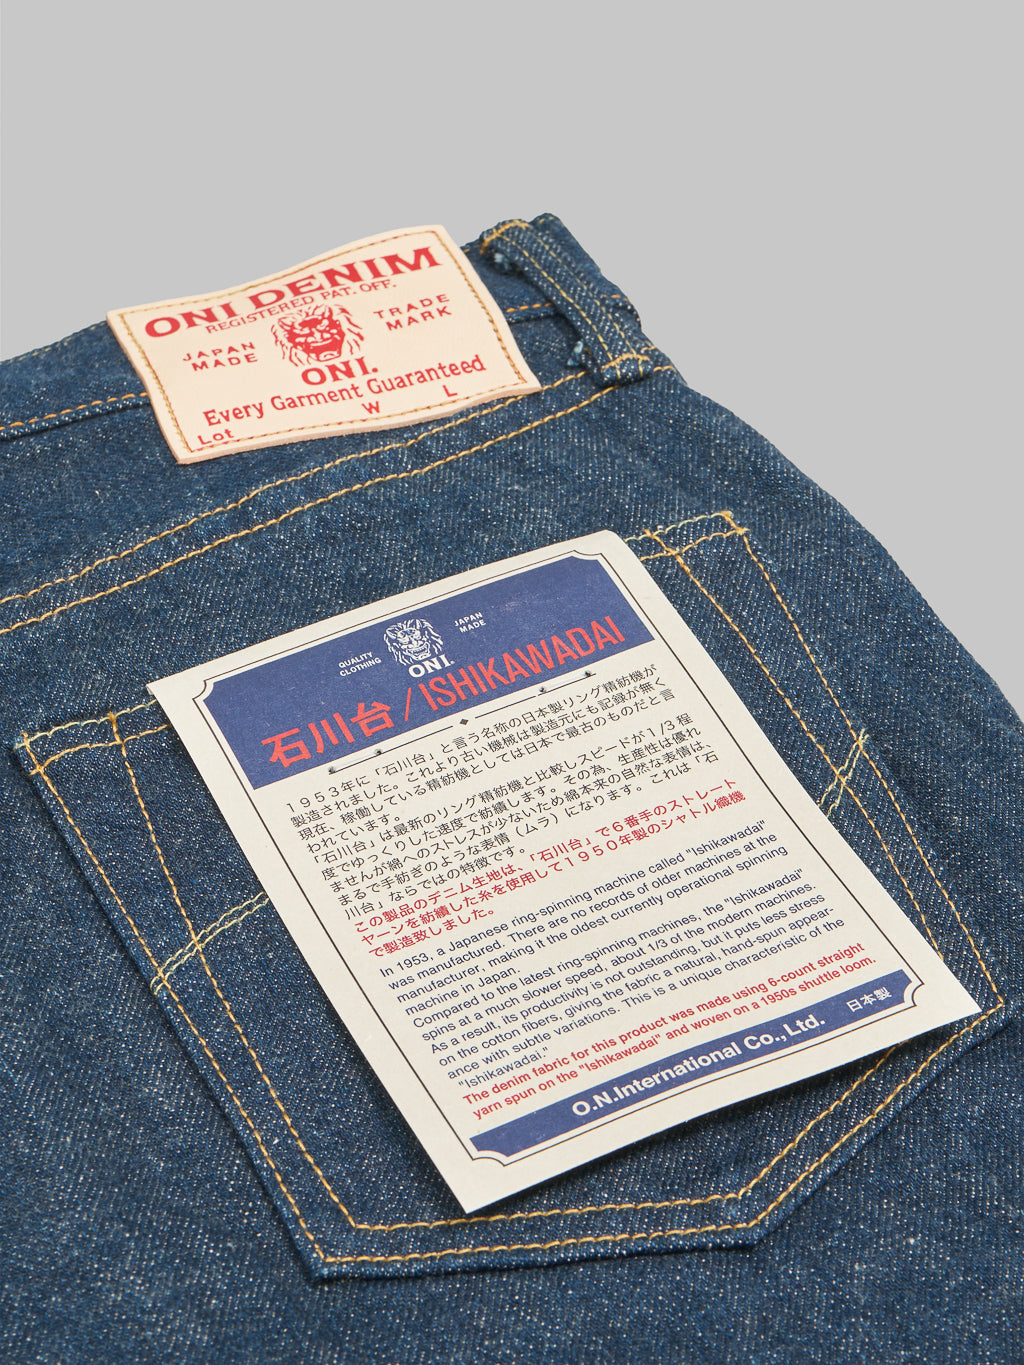 ONI Denim 622 Ishikawadai 15oz Relaxed Tapered Jeans pocket flasher